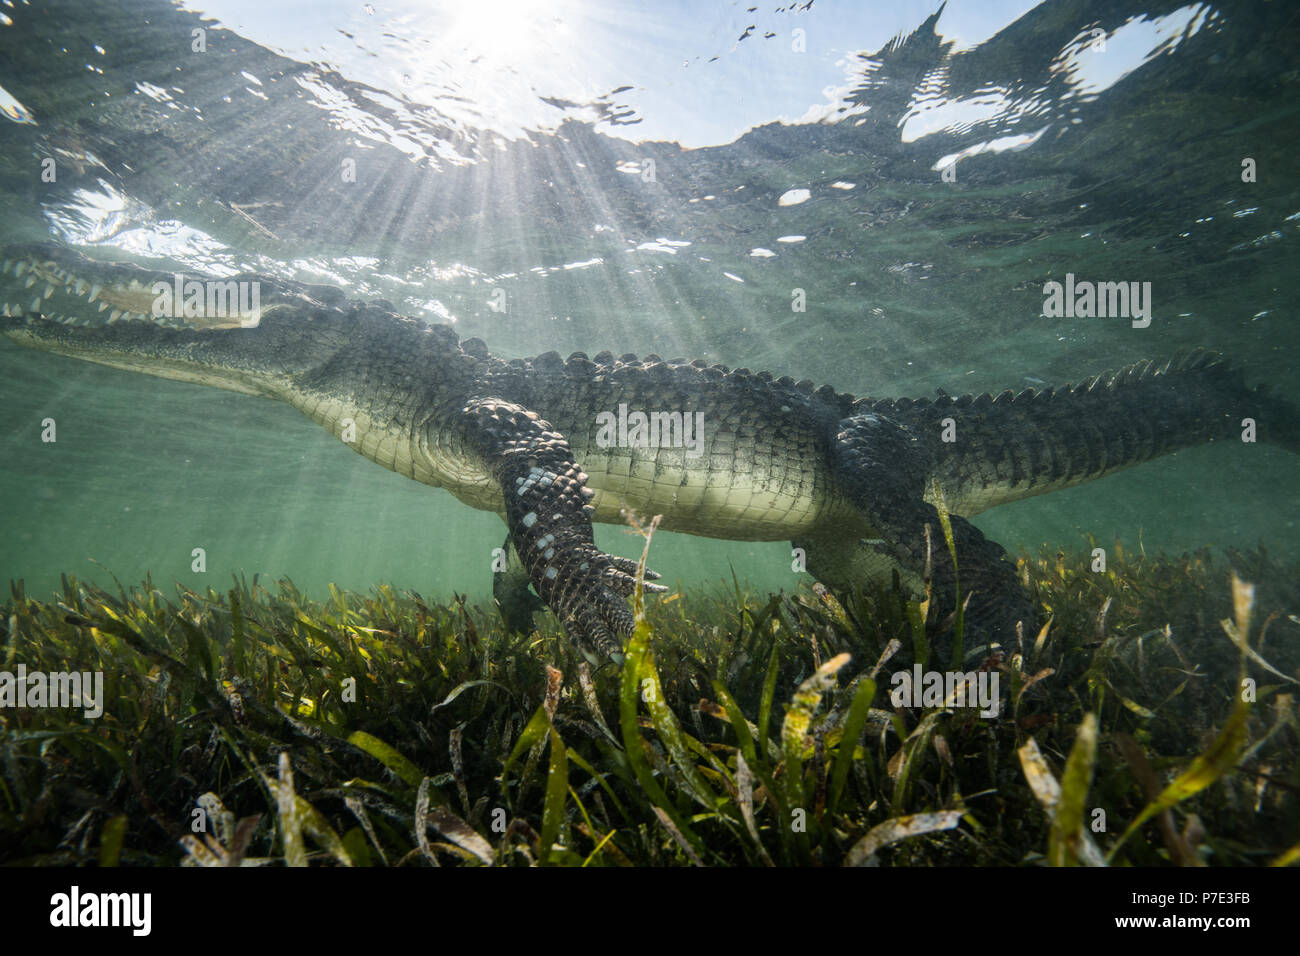 Coccodrillo americano (Crocodylus acutus) in fondali bassi, Chinchorro banche, Xcalak, Quintana Roo, Messico Foto Stock